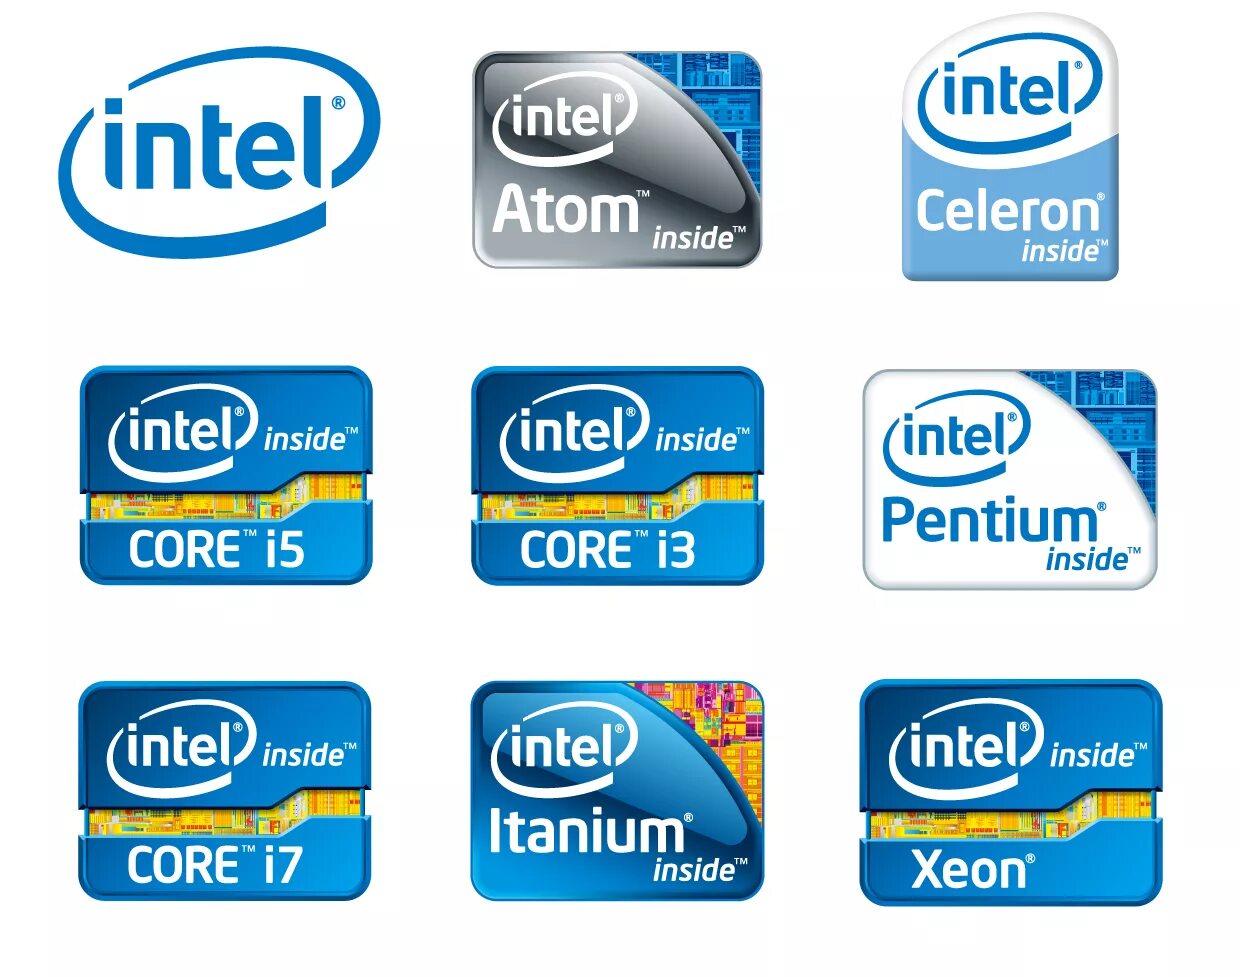 Логотип Intel inside Core i7. Intel наклейка. Наклейка на процессоре. Intel inside наклейка. Наклейки intel